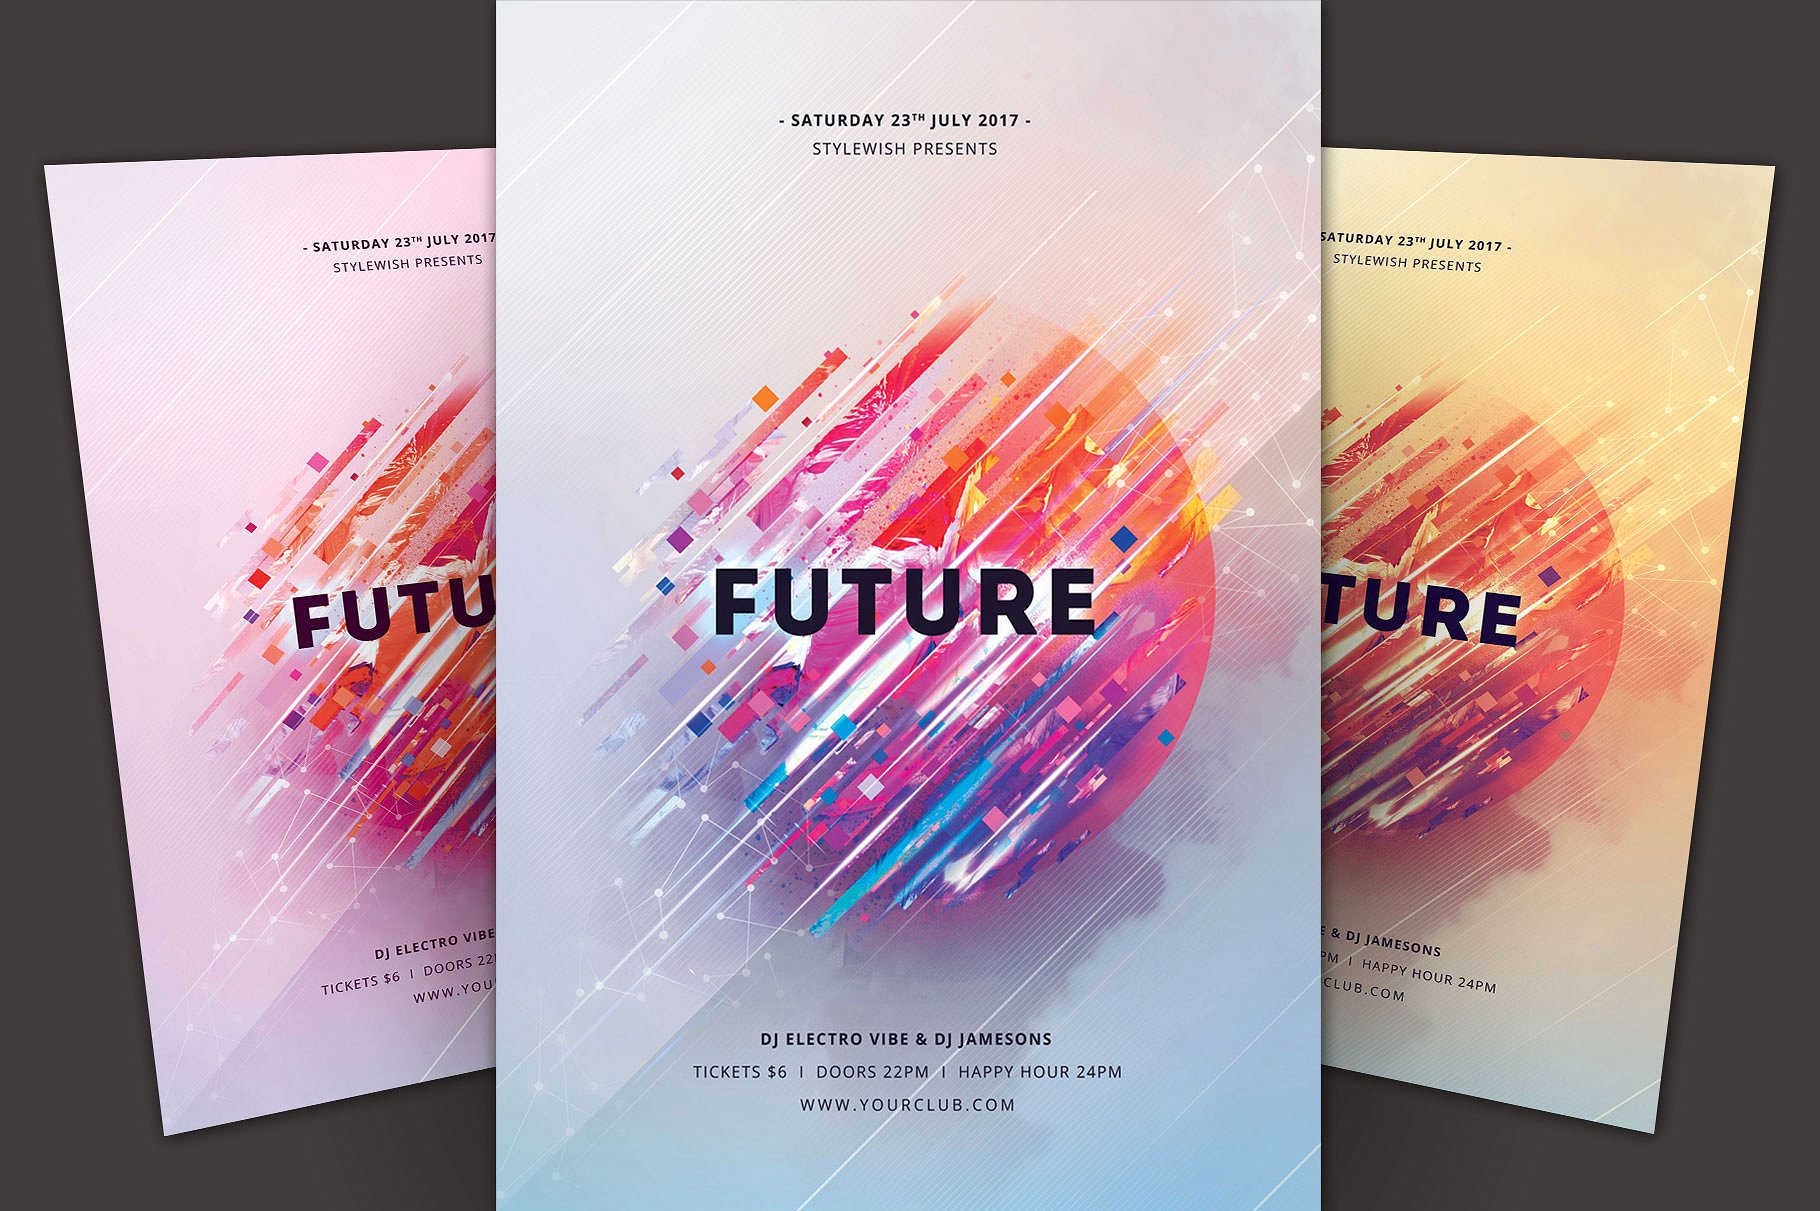 未来音乐印象海报设计模板 Future Flyer Template插图